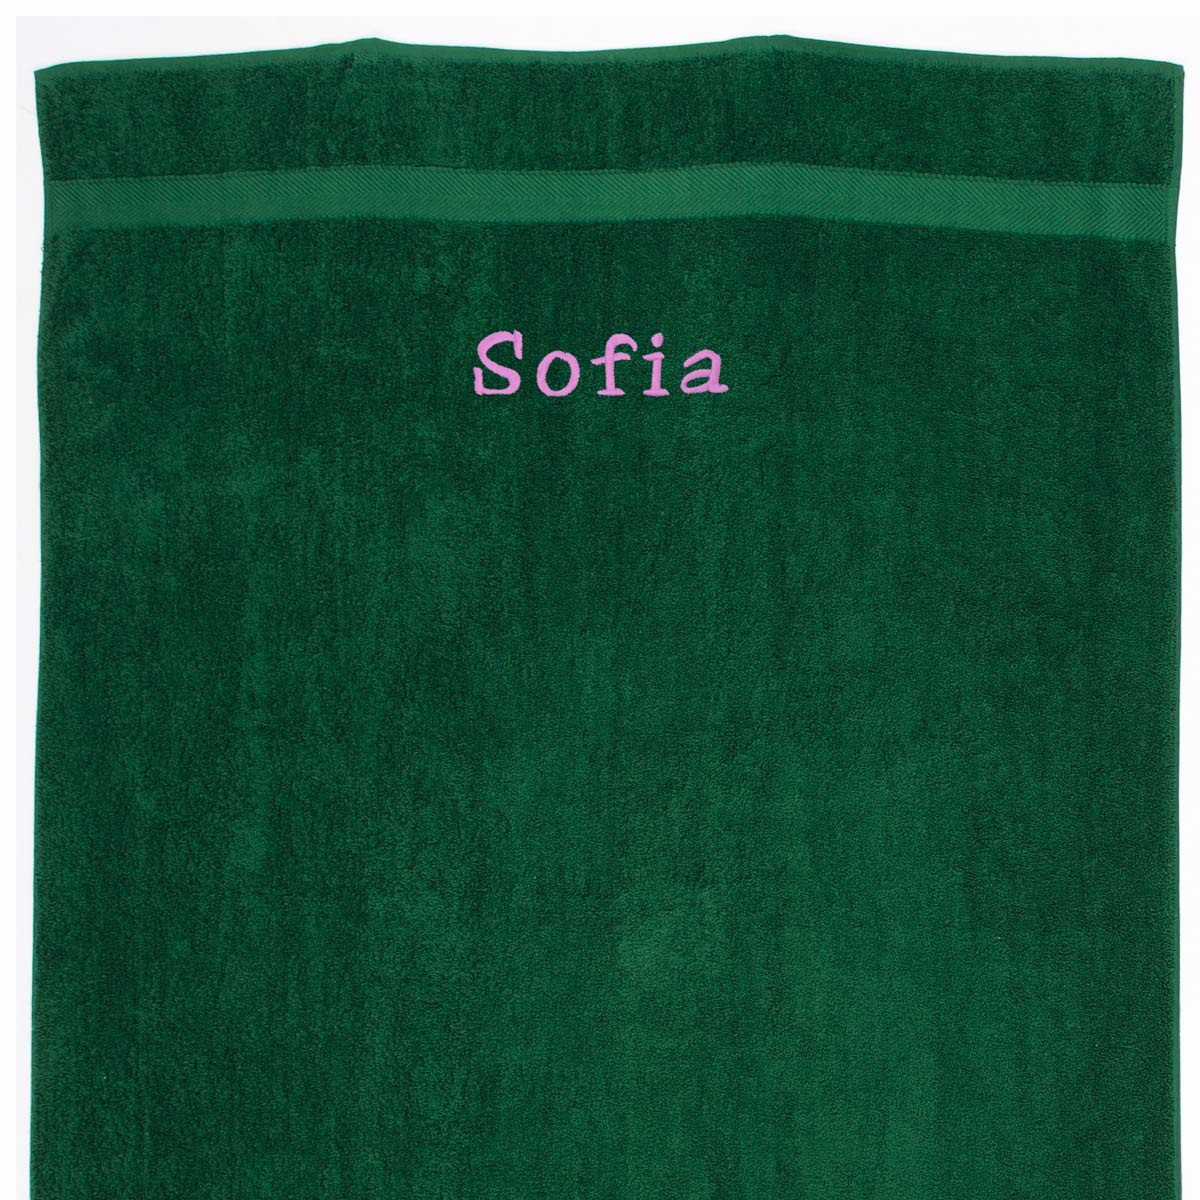 Lille Håndklæde med navn - grøn 50 x 90 cm